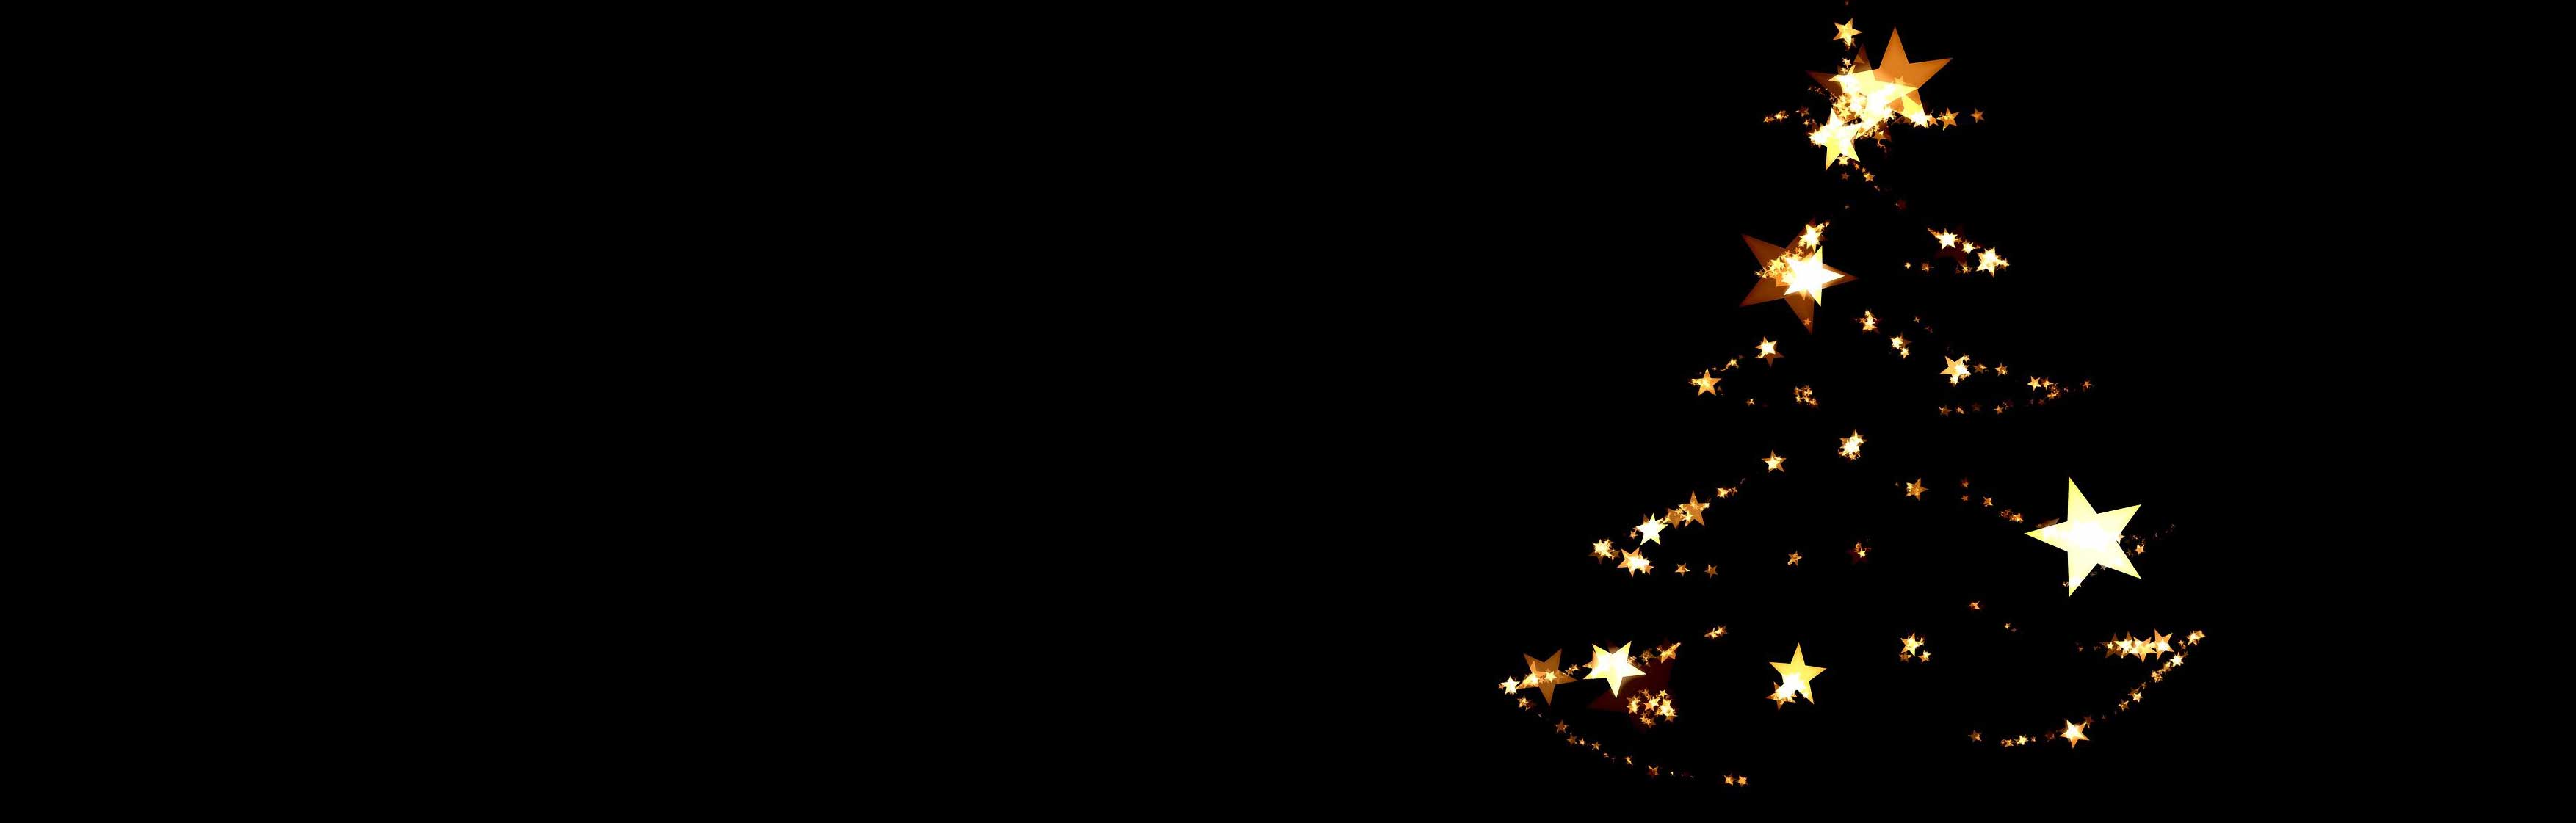 Am Weihnachtsbaume die Lichter brennen